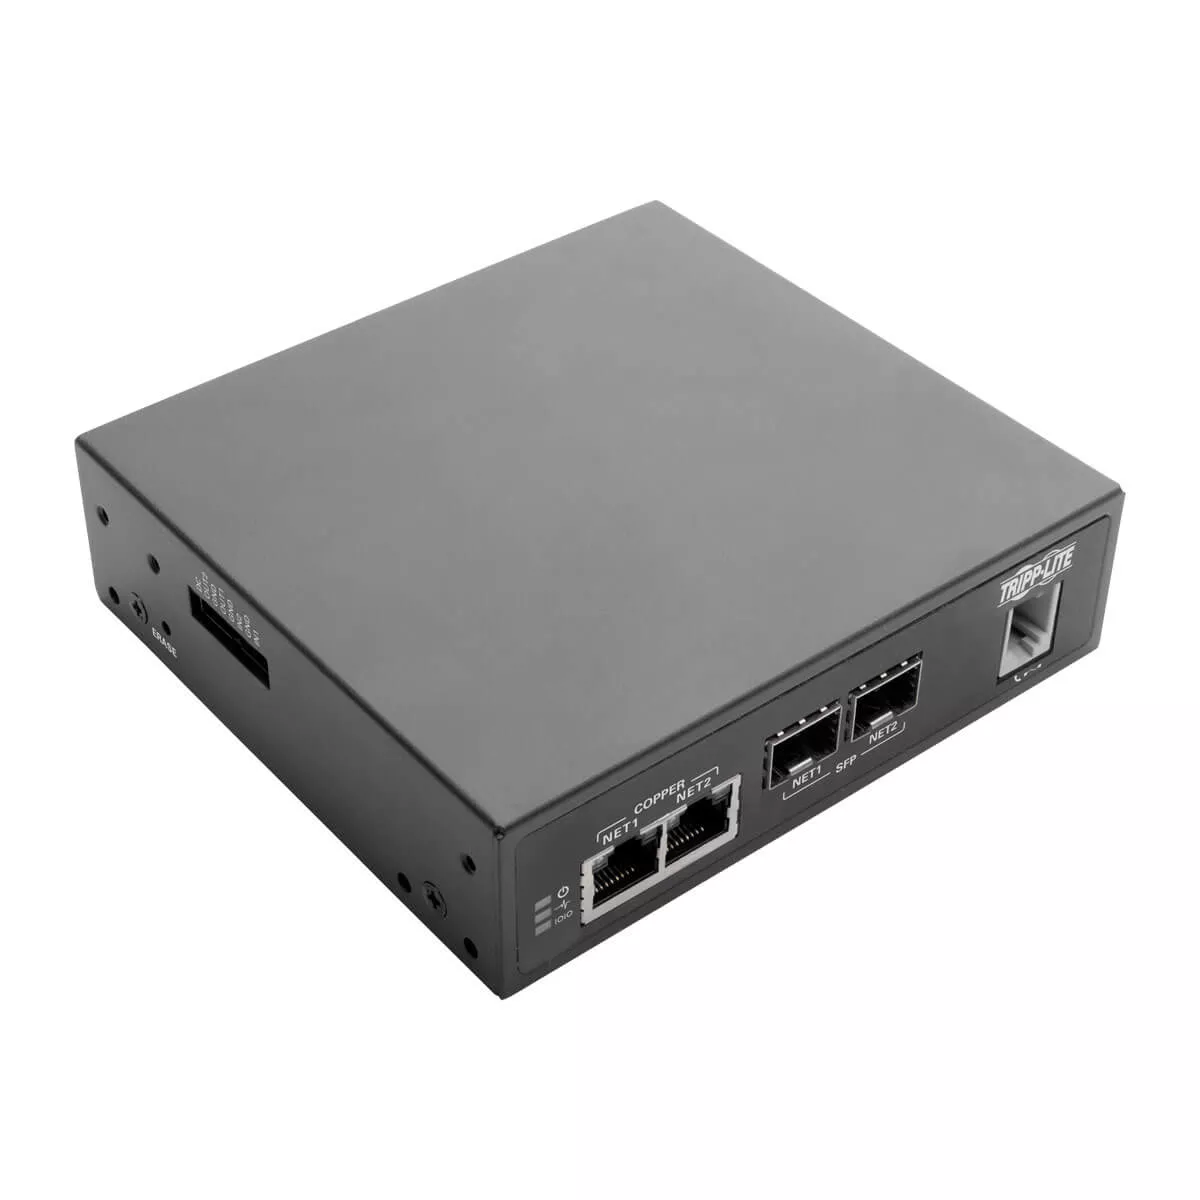 Achat Accessoire Réseau EATON TRIPPLITE 8-Port Console Server with Built-In Modem